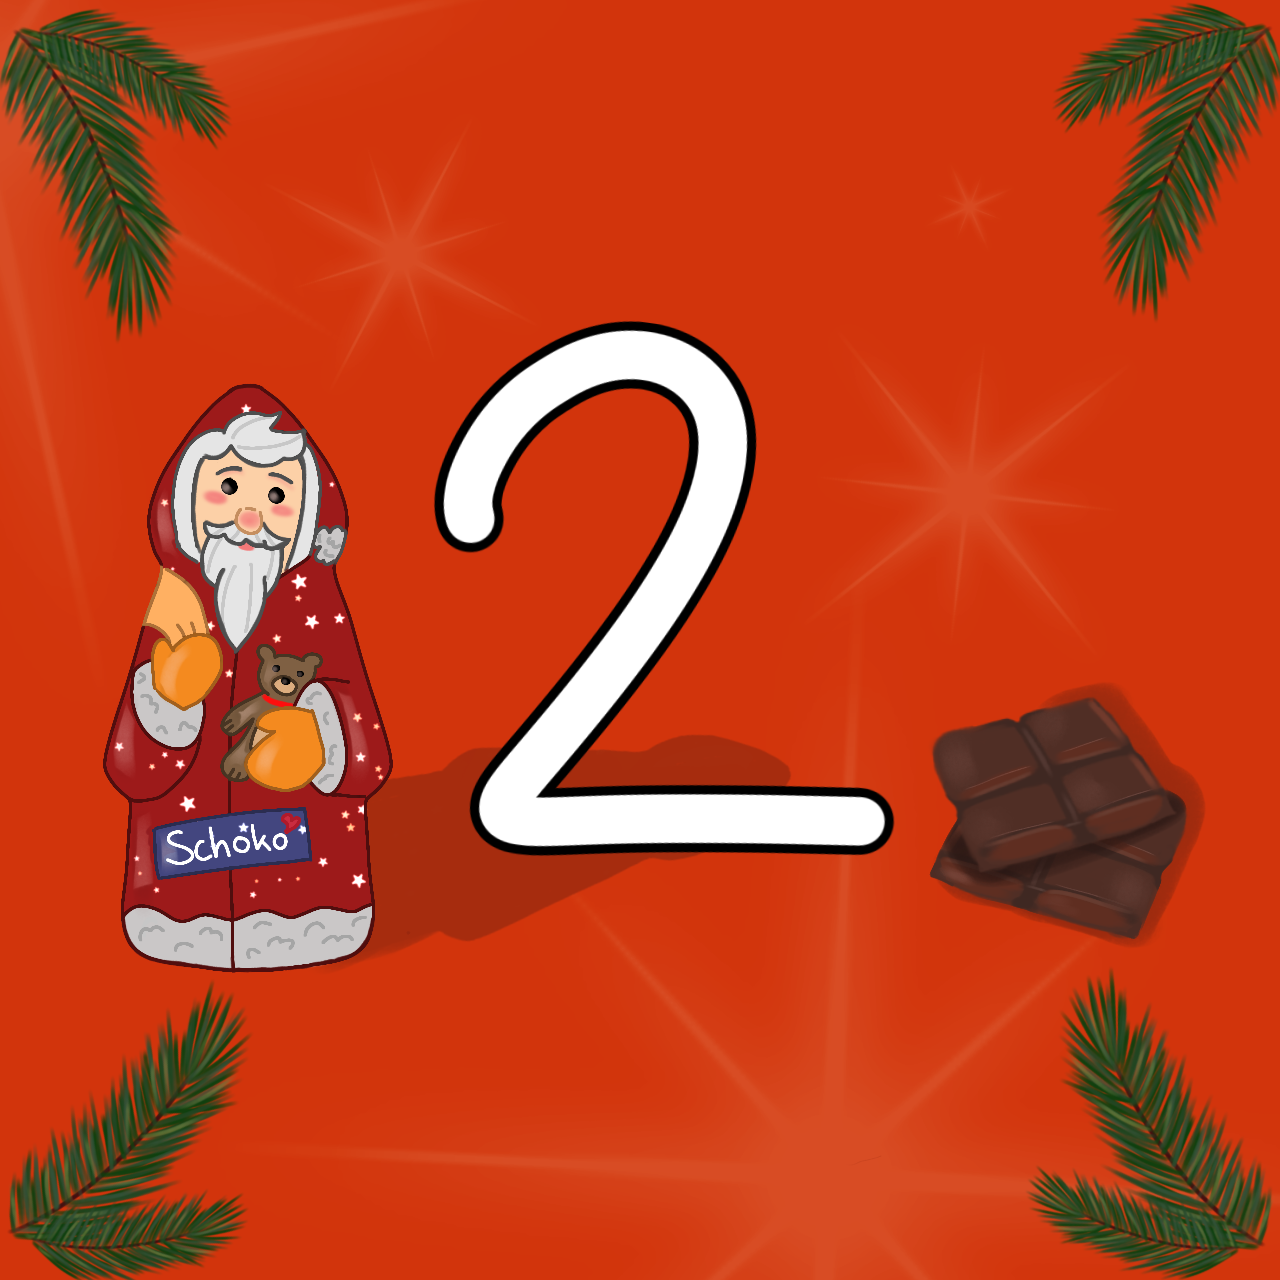 Links befindet sich ein Schokoladen-Weihnachtsmann. Rechts liegen zwei Schokoladen-Tafeln. In der Mitte befindet sich die Nummer 2.